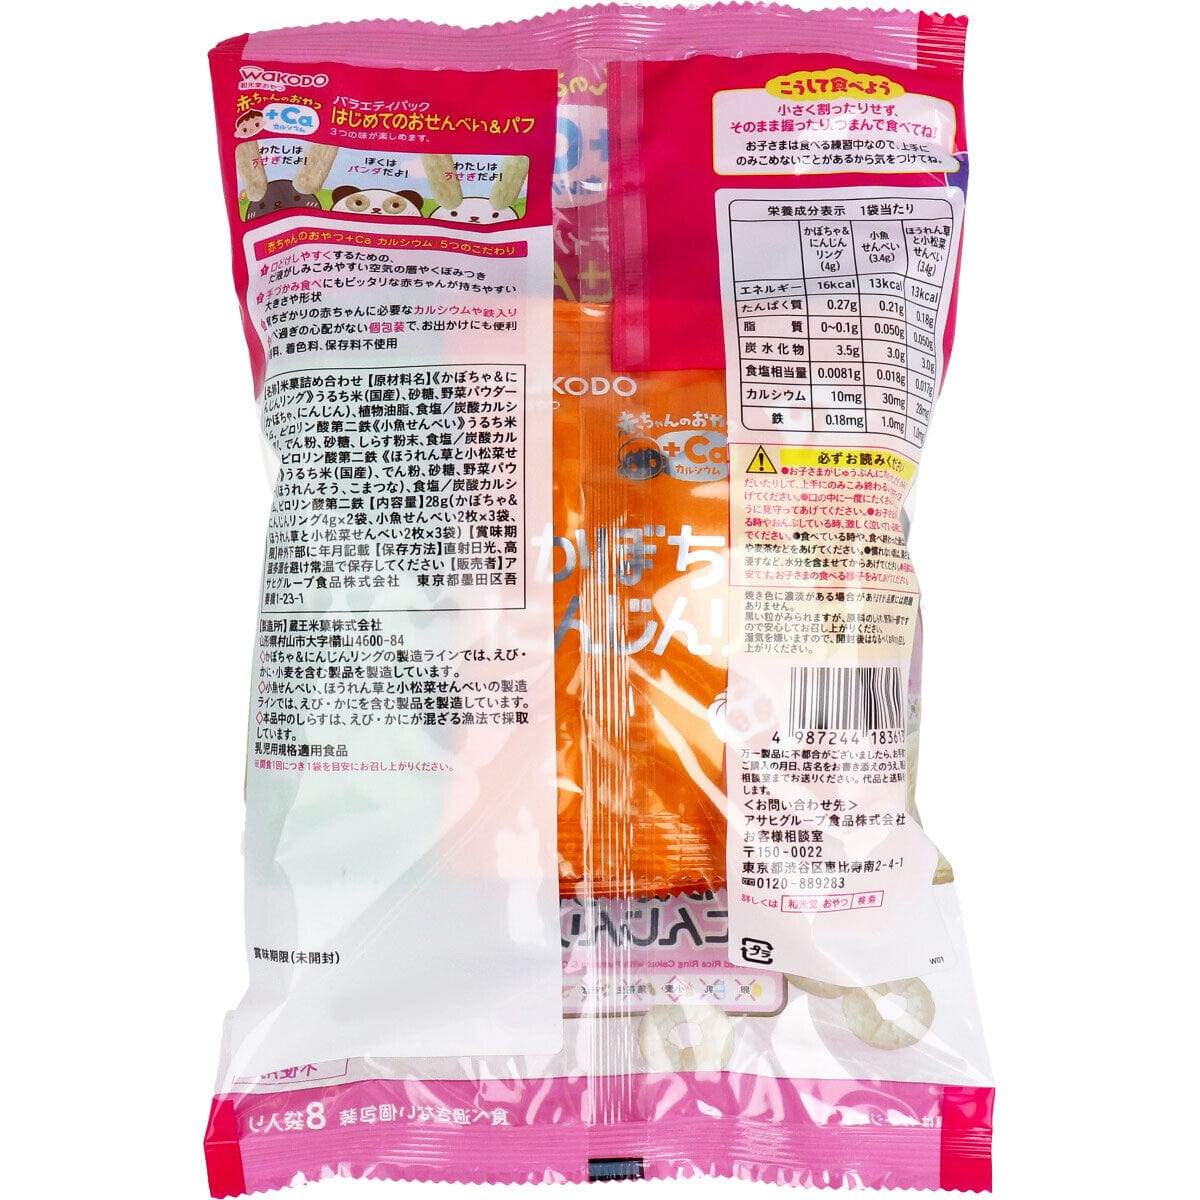 Wakodo - Baby Snacks + Ca Variety Pack First Rice Crackers & Puffs 8 Bags WAK1011 CherryAffairs